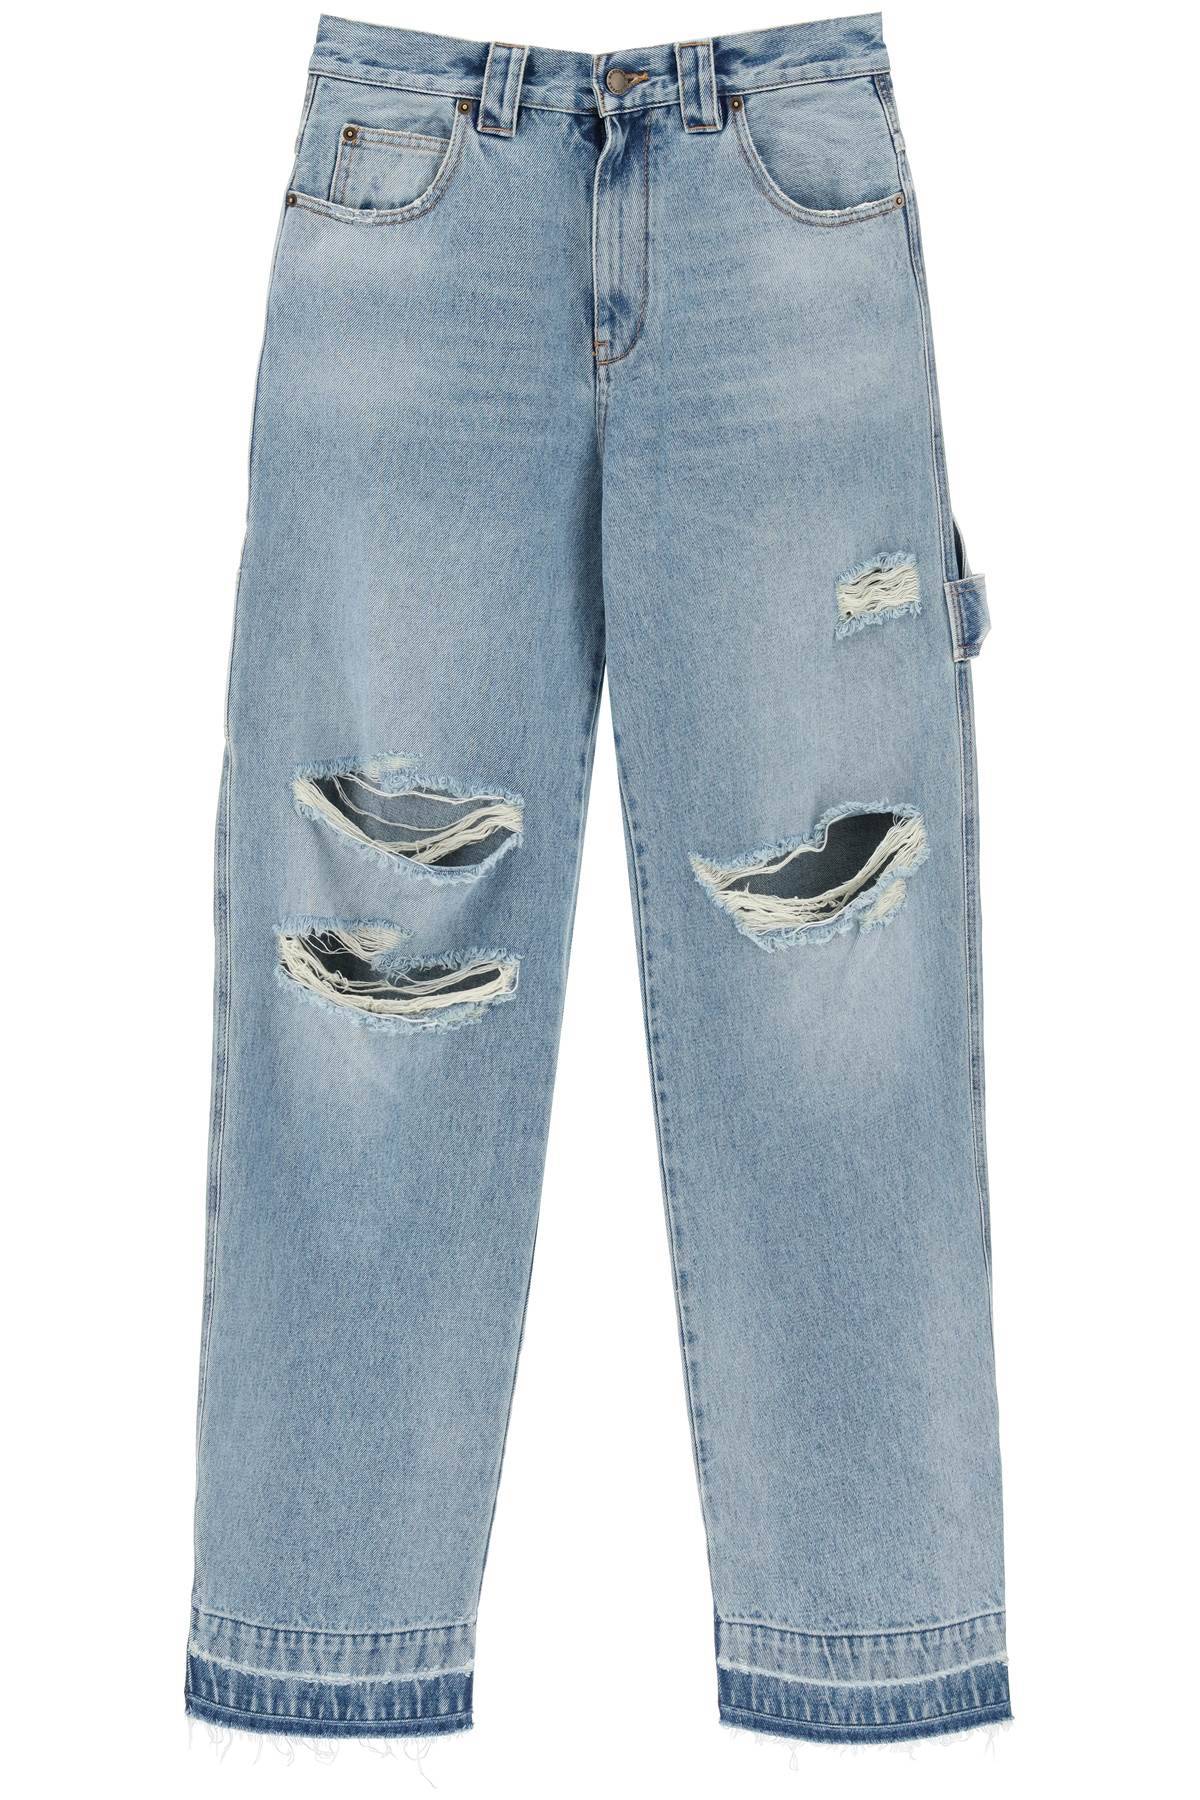 DARKPARK DARKPARK audrey cargo jeans with rips